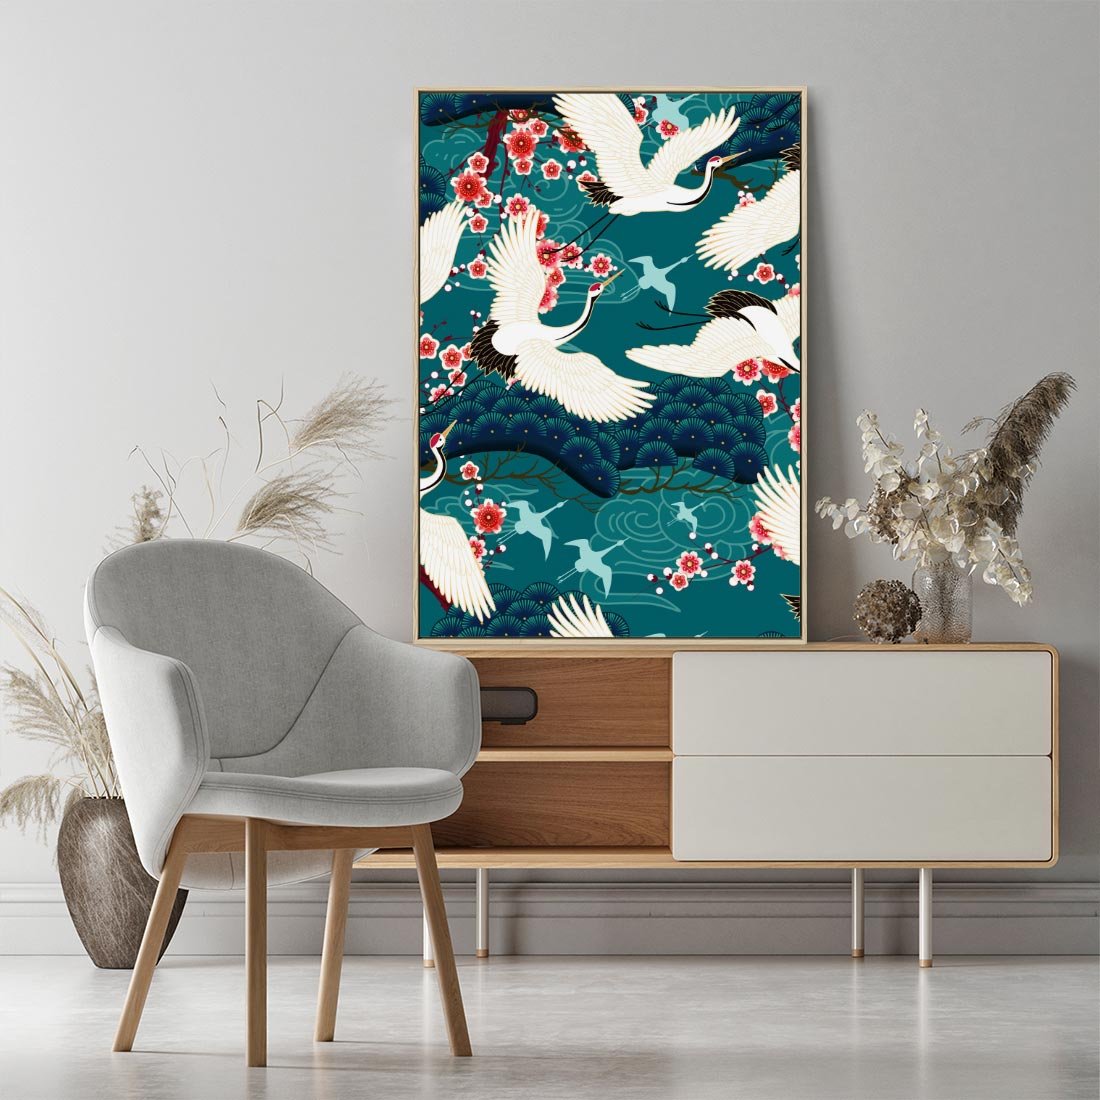 Obraz w ramie 50x70 - Żurawie Wachlarze - orientalne japońskie żurawie, grafika - rama drewno